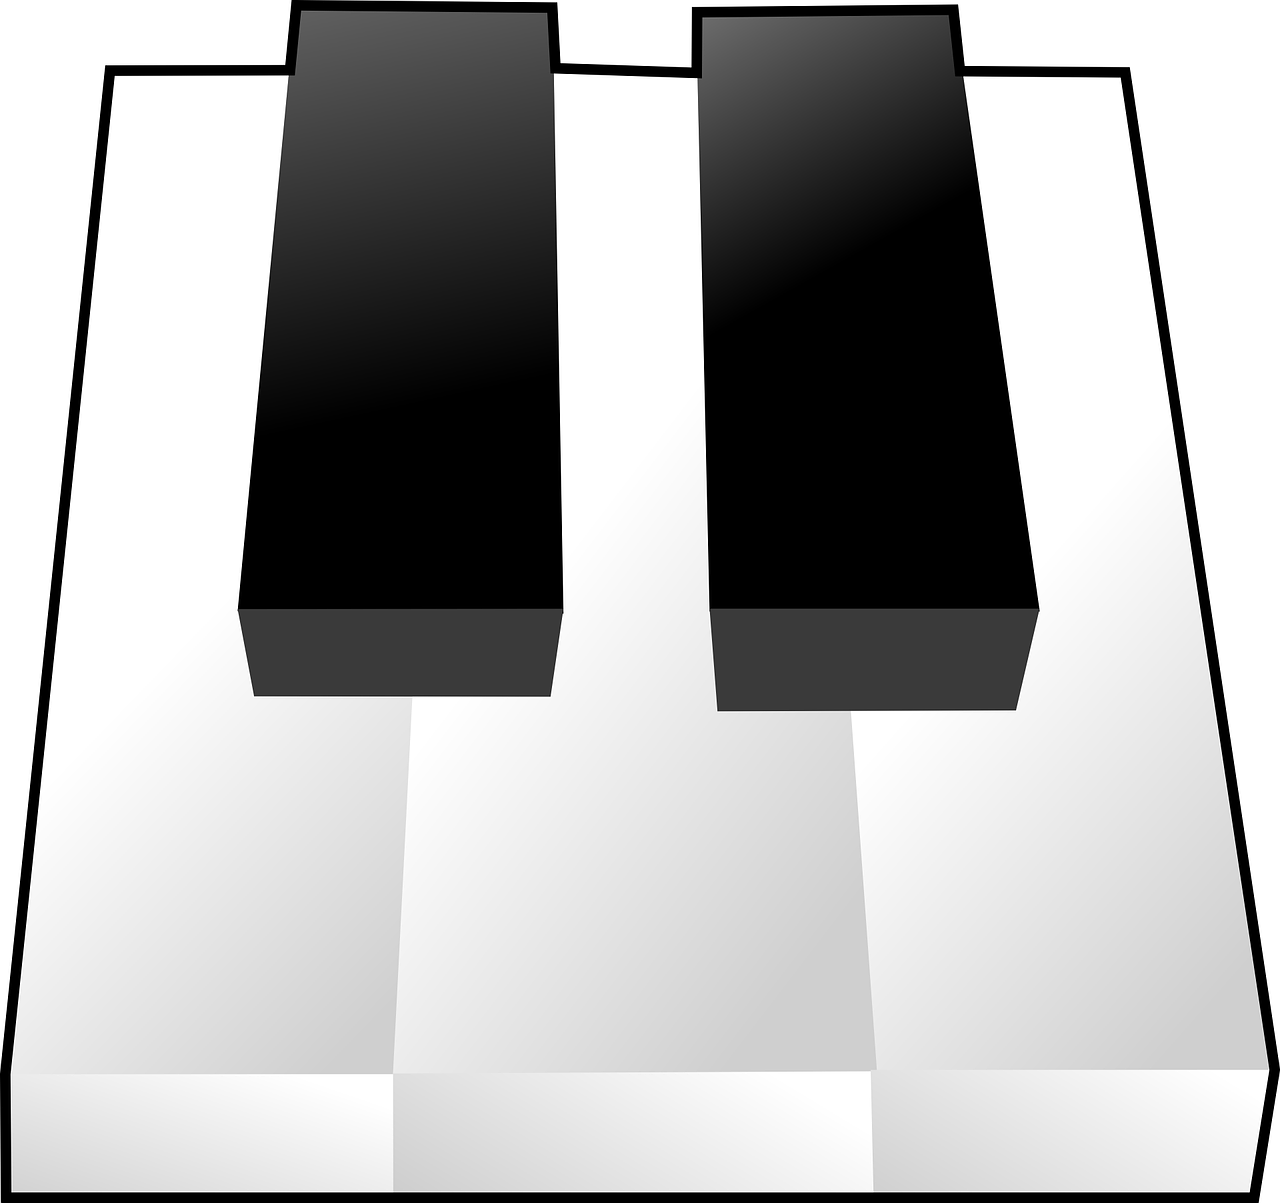 Klaviatūra, Fortepijonas, Instrumentas, Klasikinis, Melodija, Džiazas, Muzikantas, Rokas, Pramogos, Harmonija